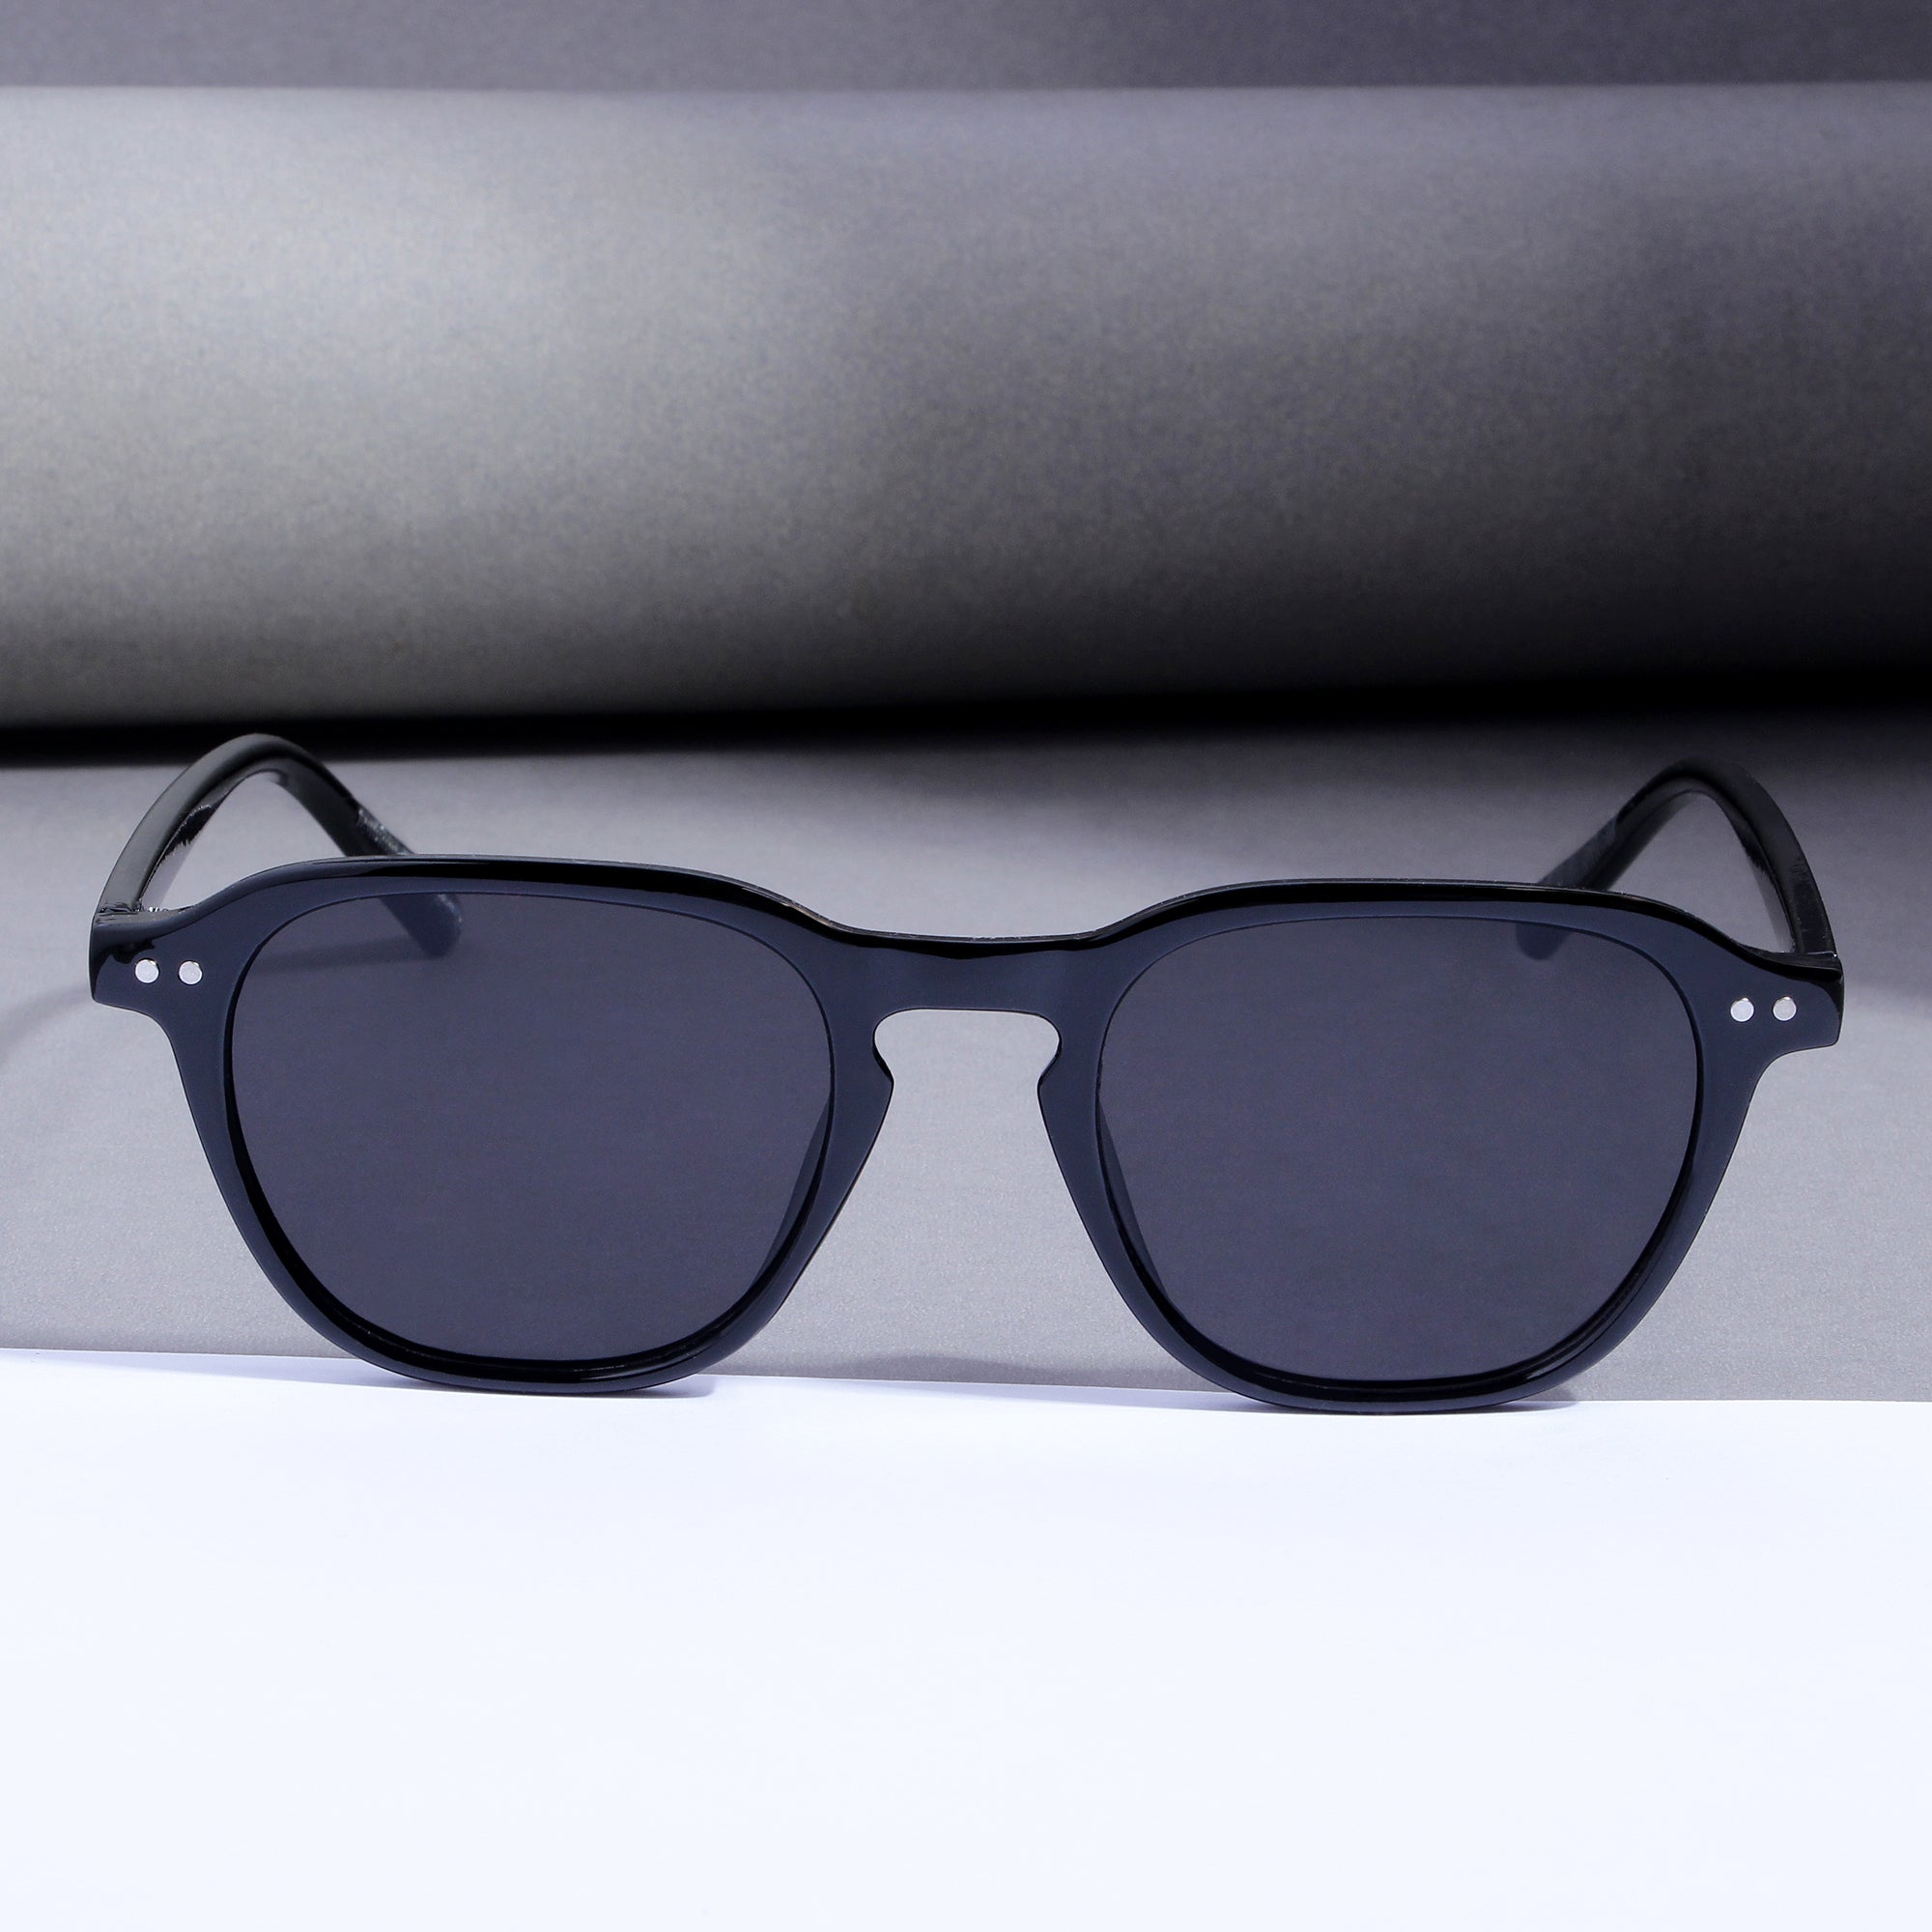 GlassyX V1 Black And Black Sunglasses